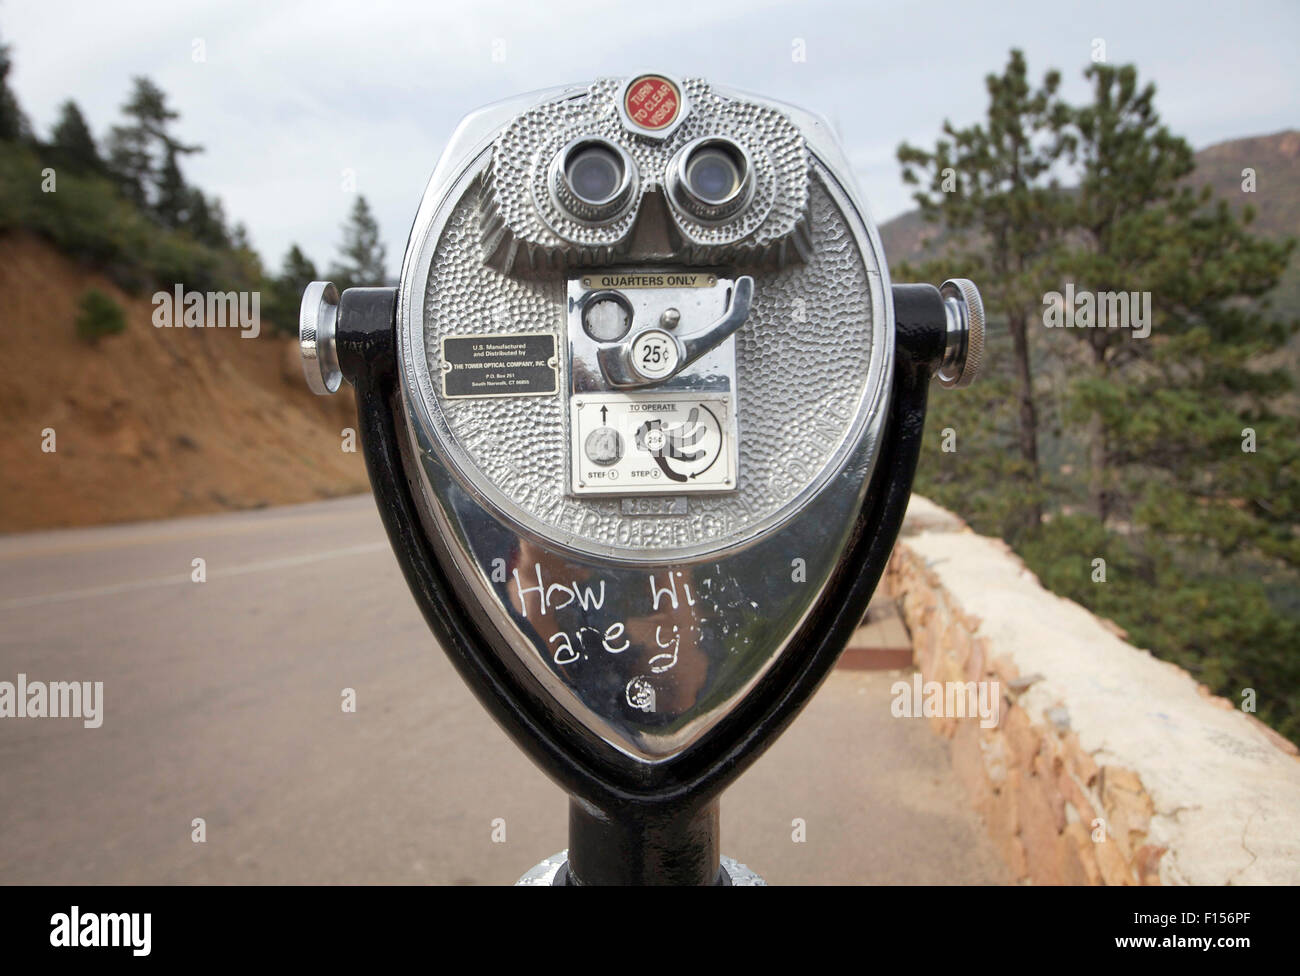 Colorado Springs, colo, STATI UNITI D'AMERICA. 24 Ago, 2015. Agosto 26, 2015. Un visualizzatore telescopico guarda al Pikes Peak che si erge a 14,115 piedi ed è accessibile da un diciannove miglia di strada per il vertice che è lastricata lungo tutta la distanza. La montagna si affaccia su Colorado Springs, Colorado e nelle giornate limpide si può vedere lo stato del Kansas ad est. © Ralph Lauer/ZUMA filo/Alamy Live News Foto Stock